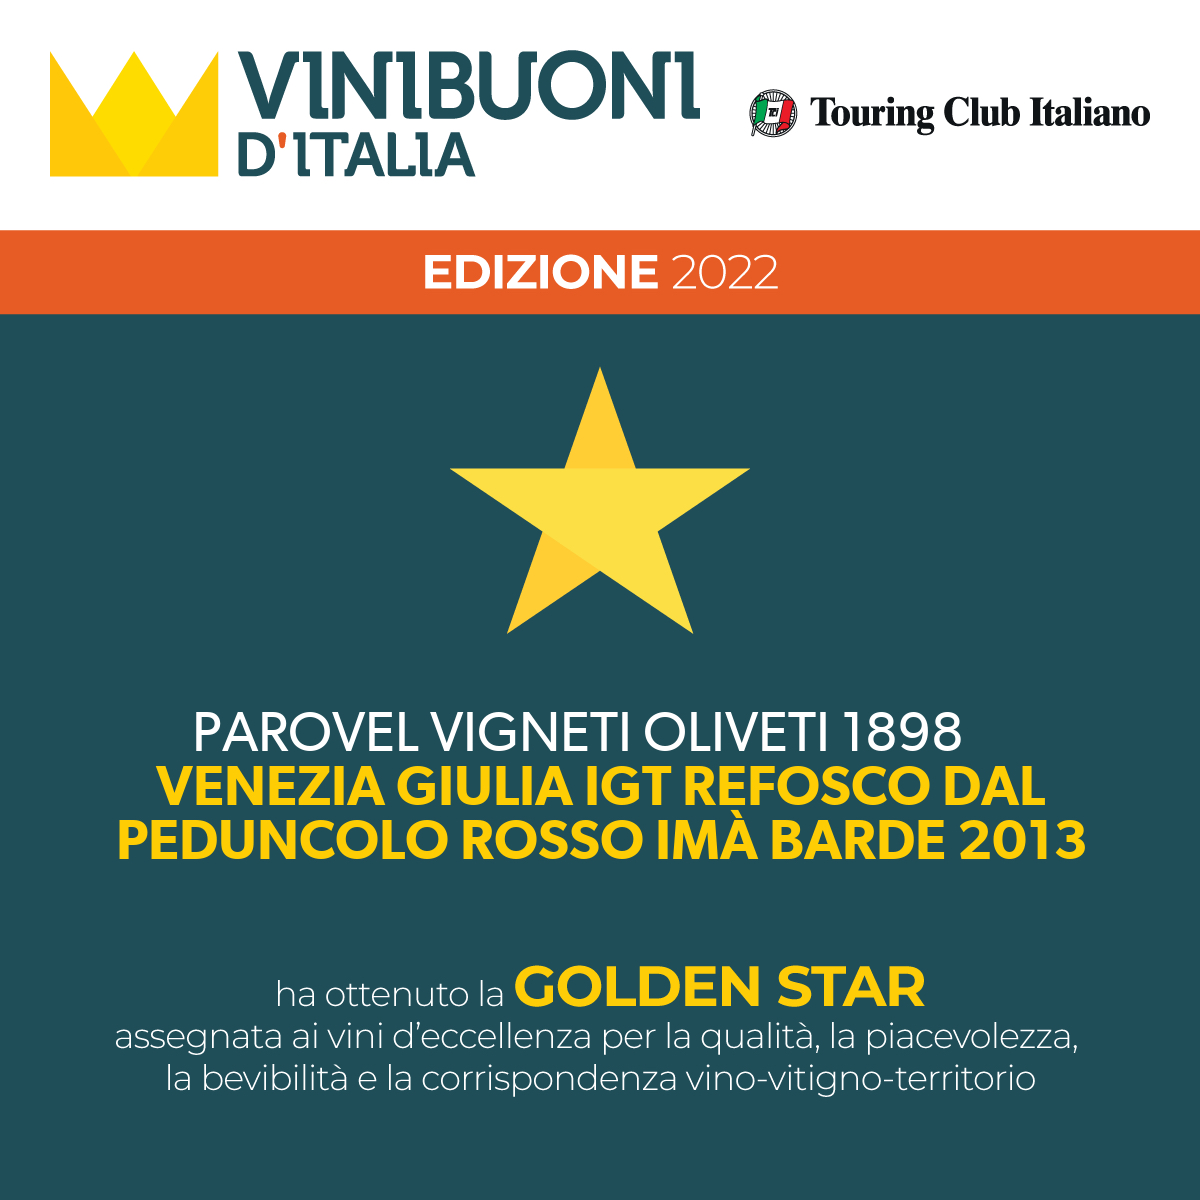 golden star vinibuoni refosco ima parovel